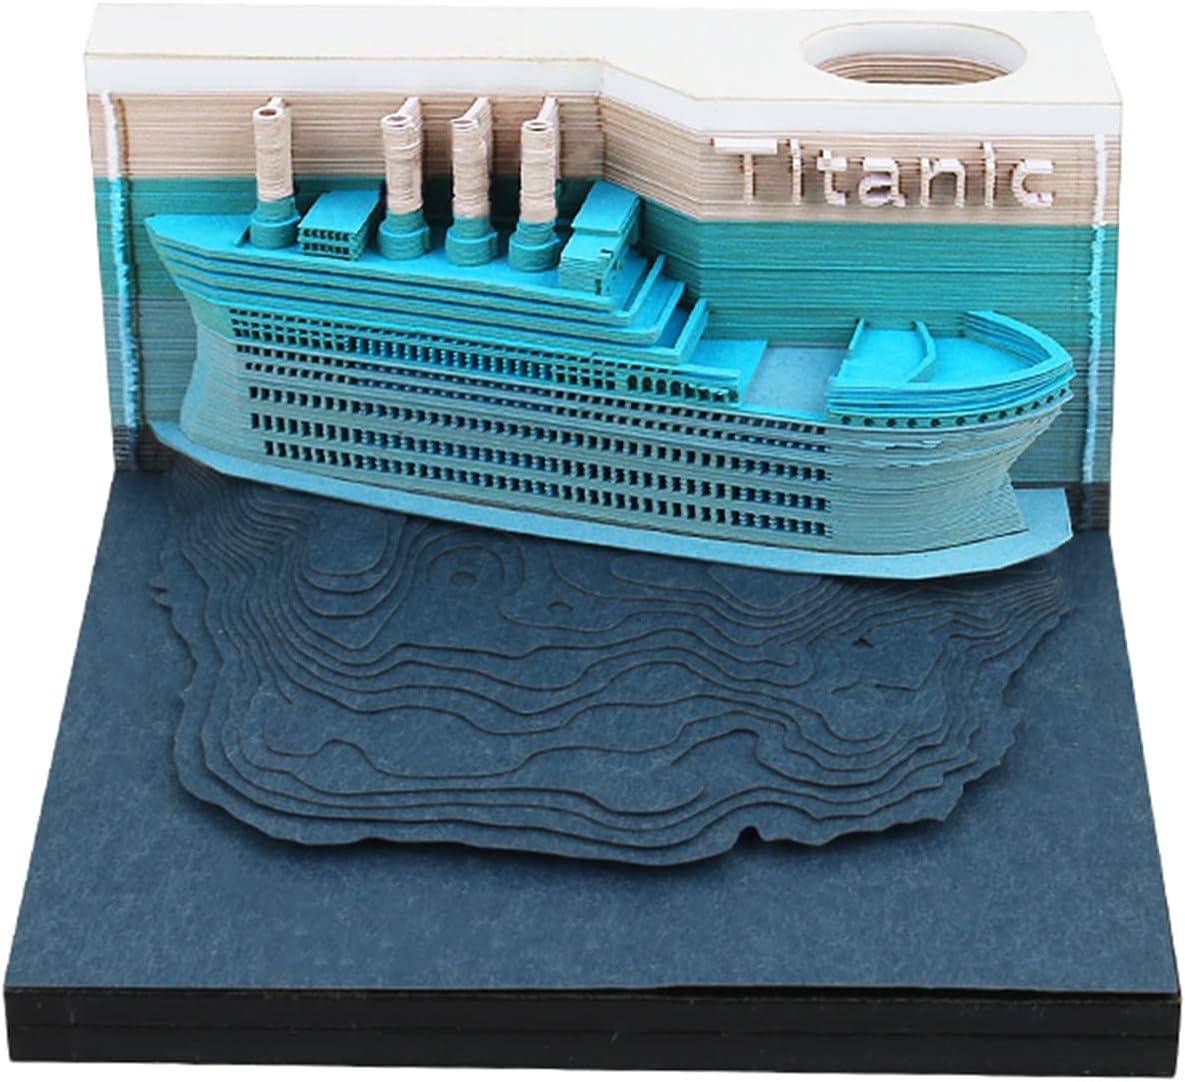 Bloc-notes en papier 3D Titanic avec lumières LED